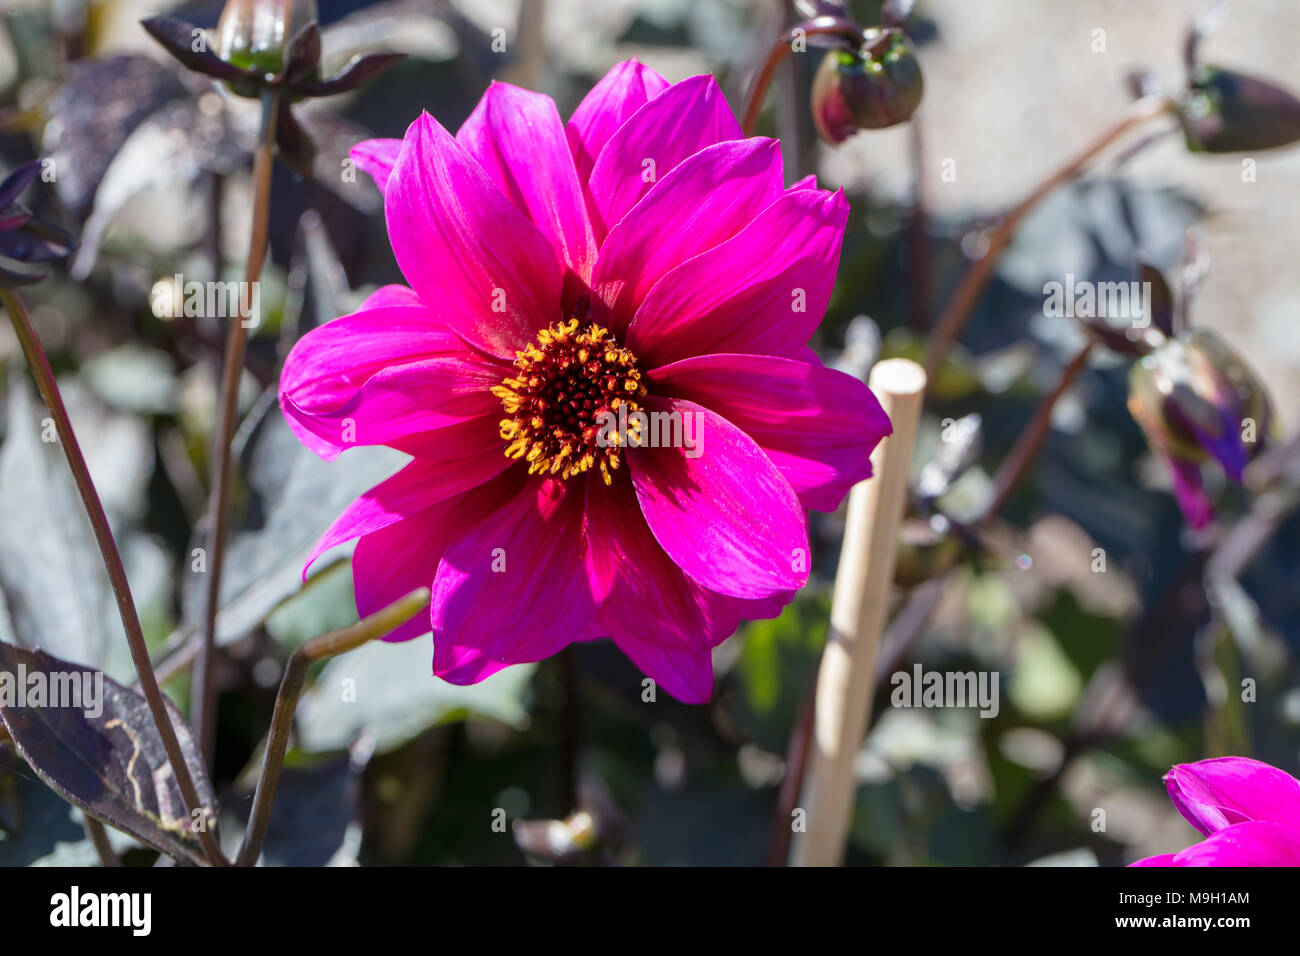 'Excentrique' Peony Flowered Dahlia, Piondahlia (Dahlia x Hortensis) Stock Photo